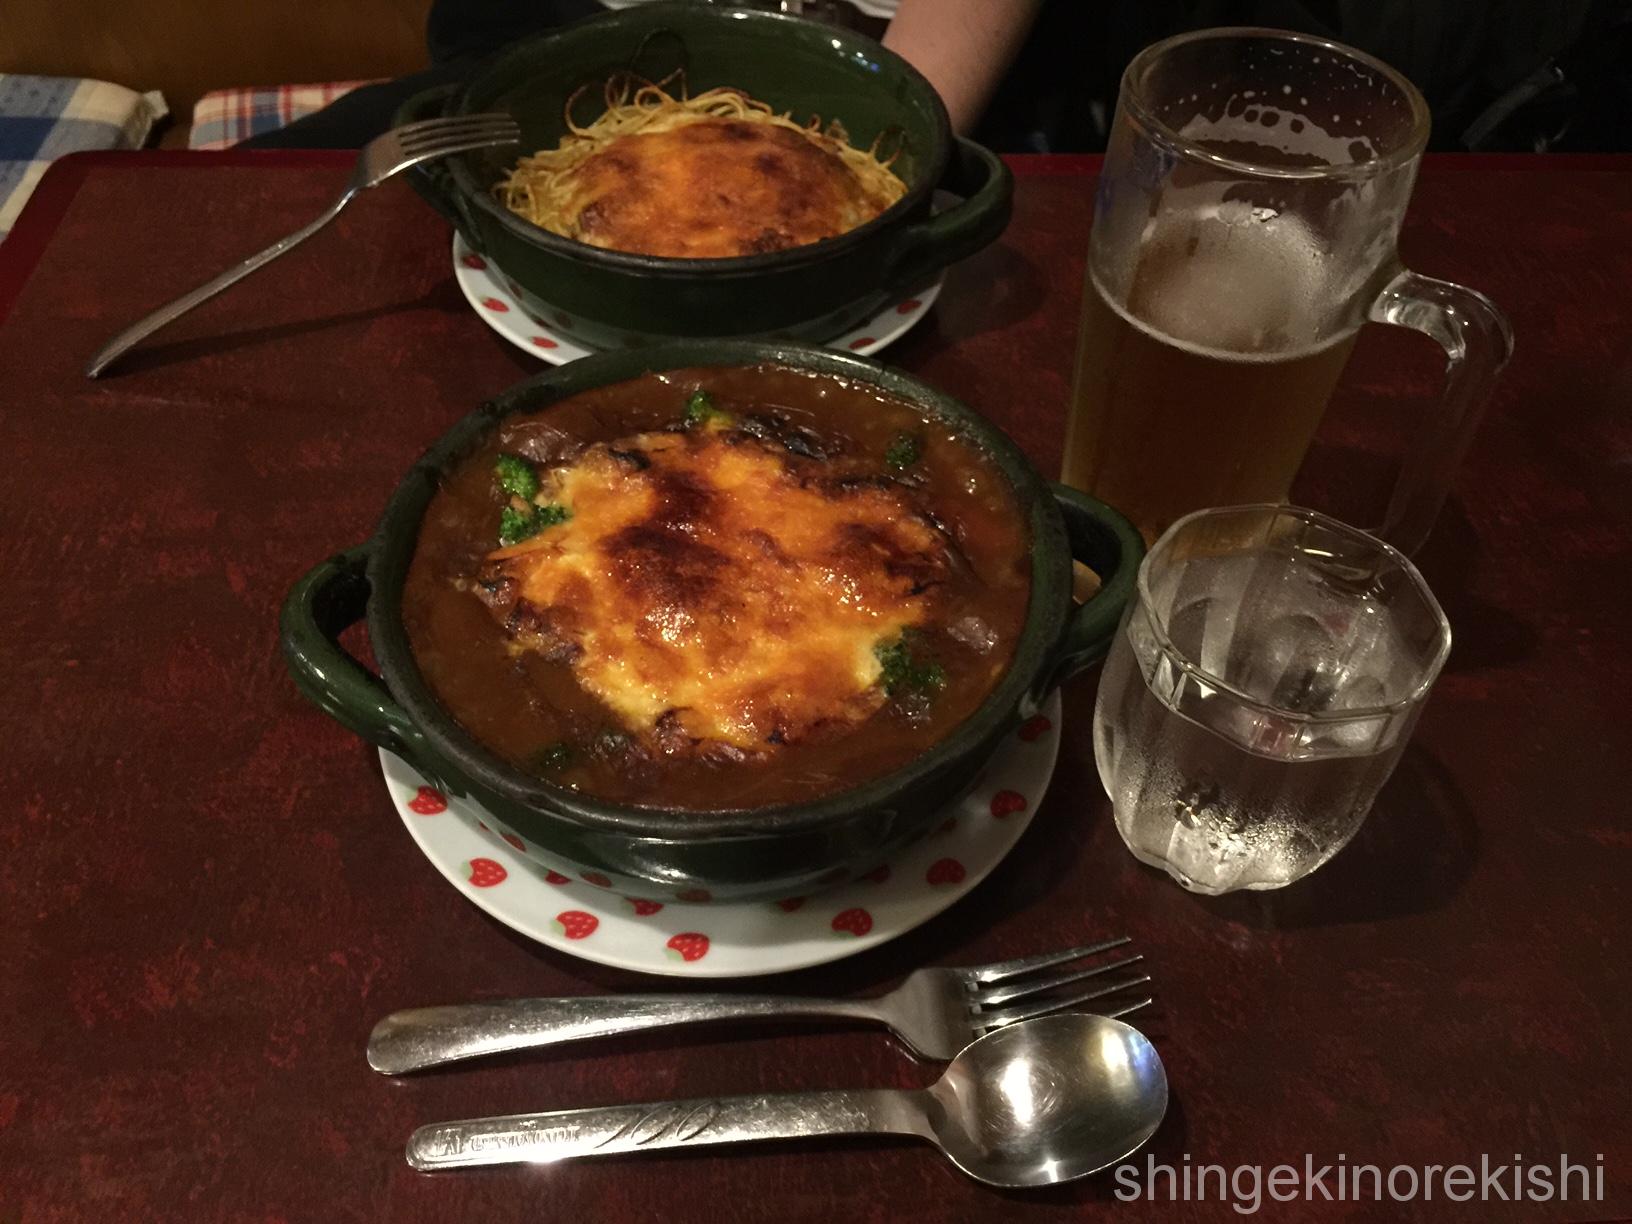 浅草橋大盛りグルメストーン焼きカレー焼きスパゲティミートソース有名人気美味しい東京ビール23